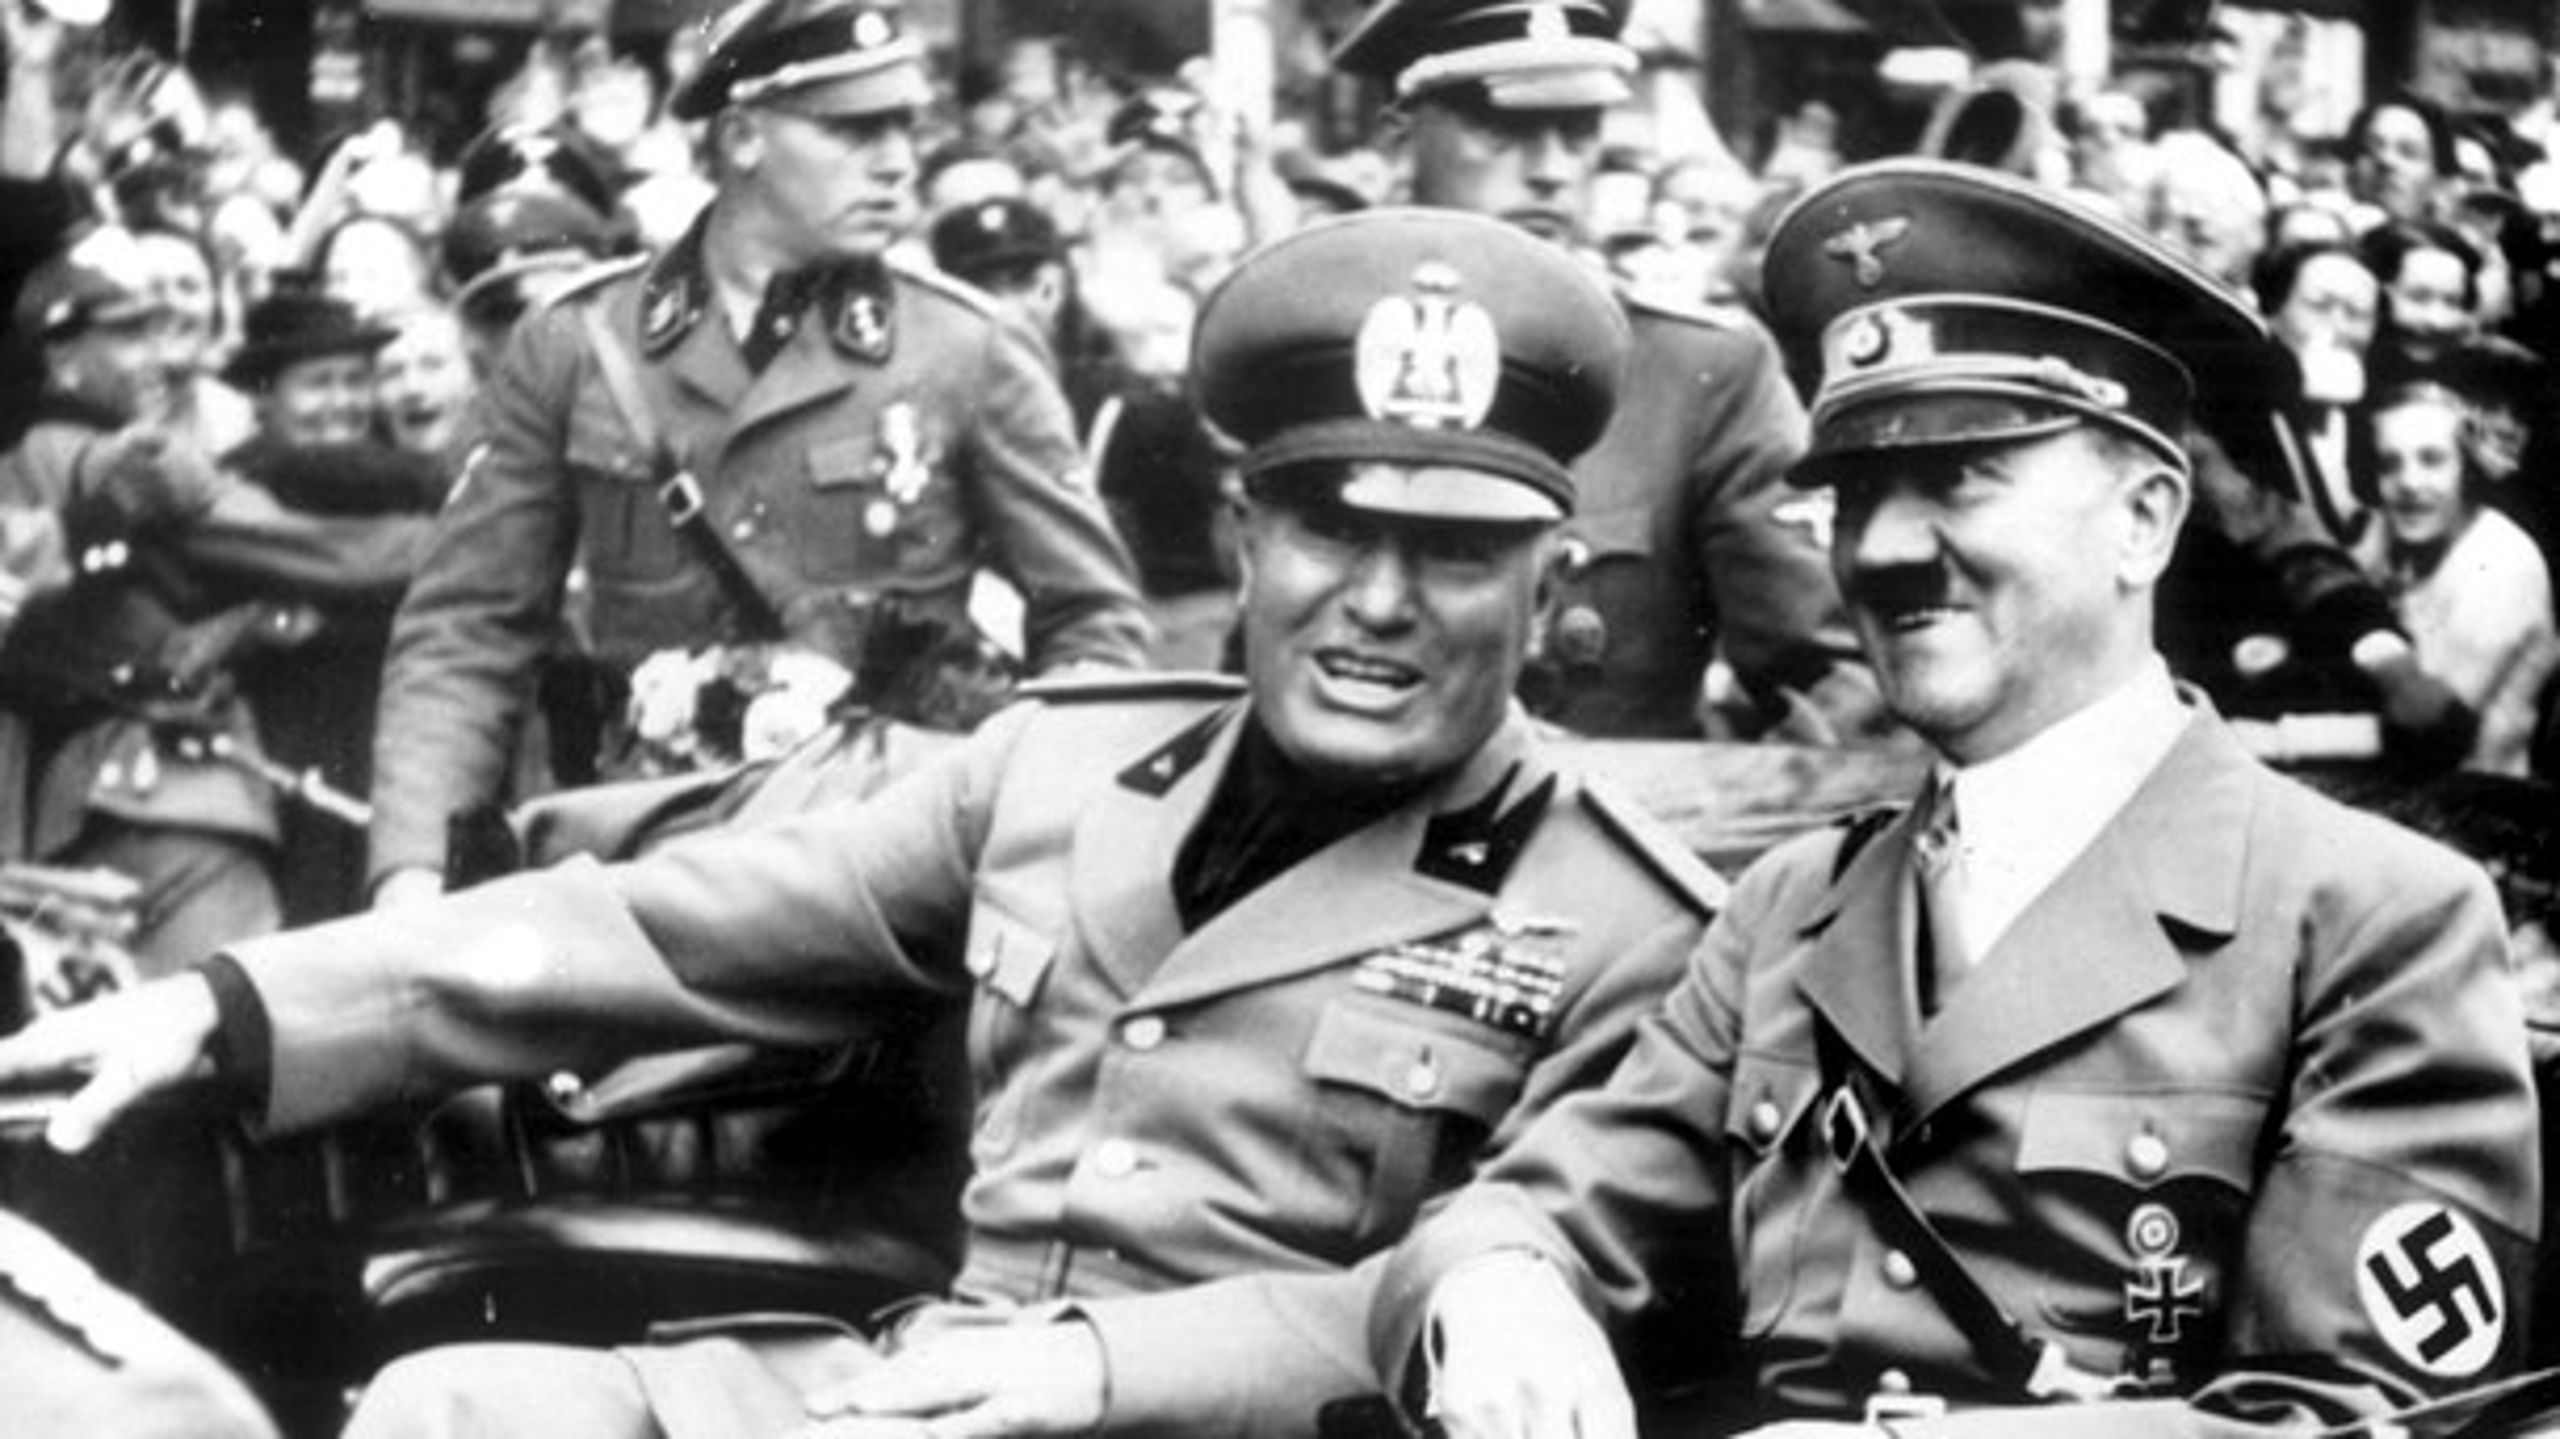 KAMMERATER: Både Adolf Hitler og Benito Mussolinis tankegods havde rod i den yderste politiske venstrefløj, skriver Lars Tvede.